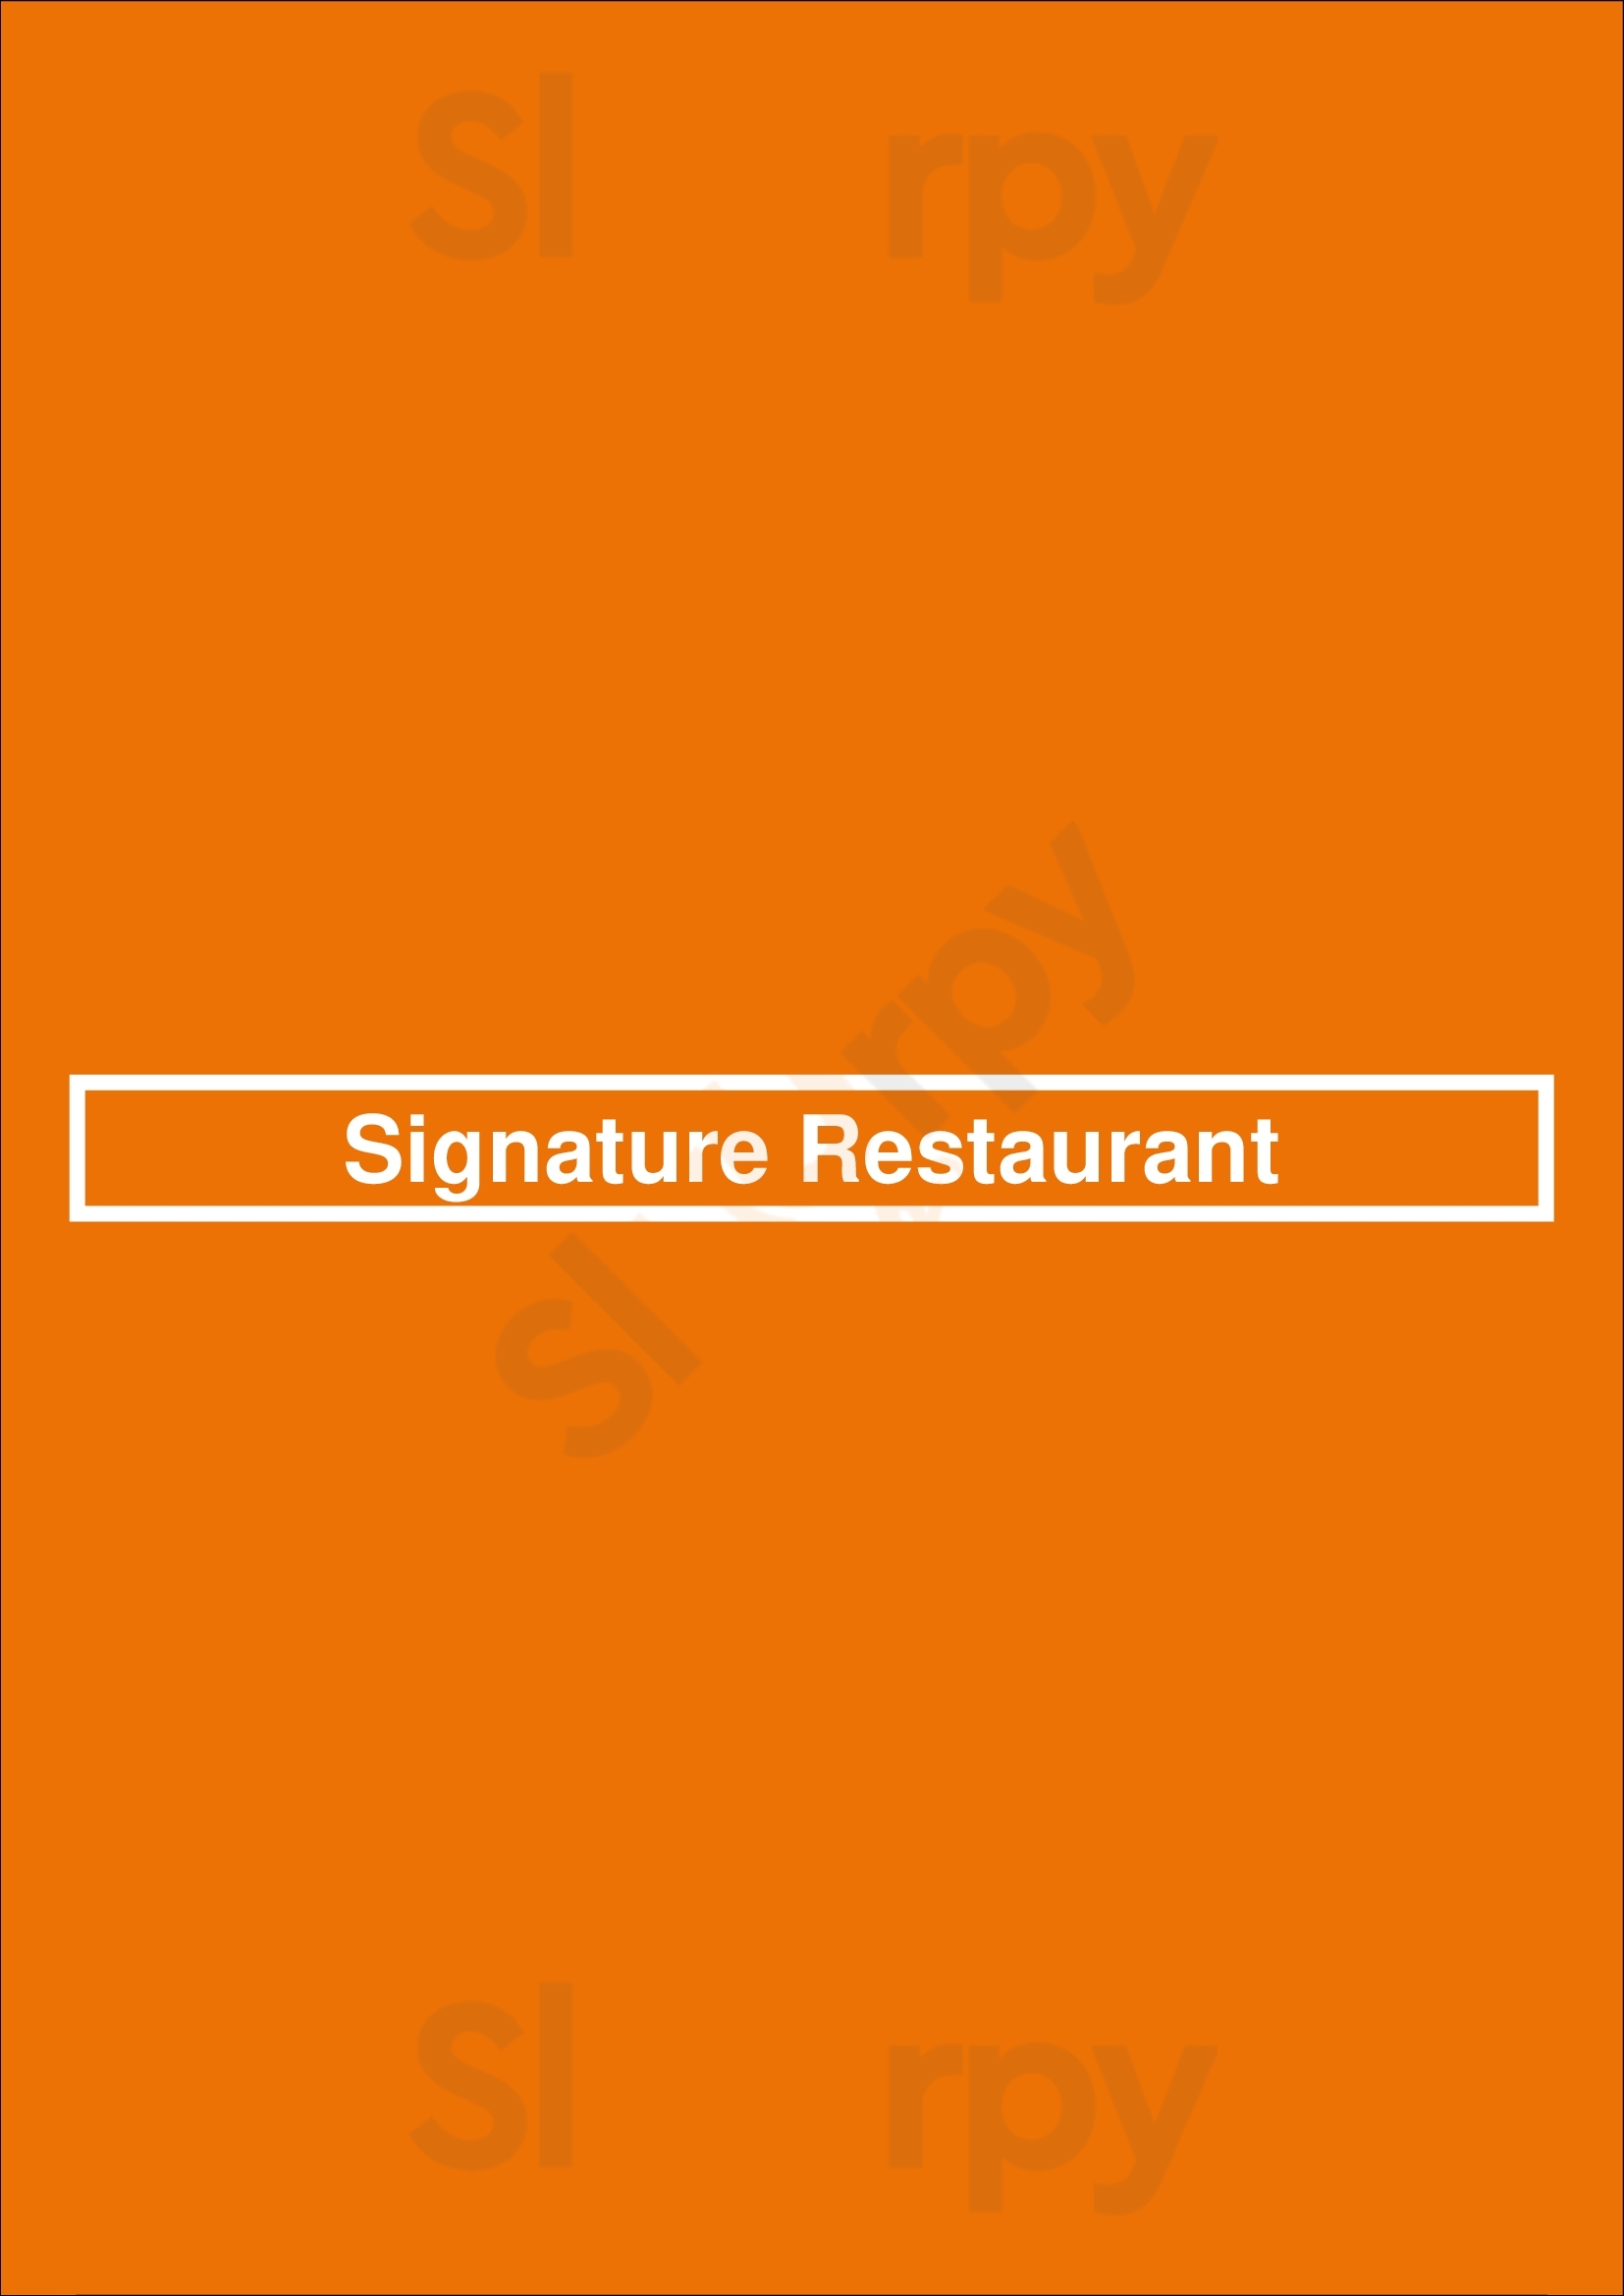 Signature Restaurant San Antonio Menu - 1